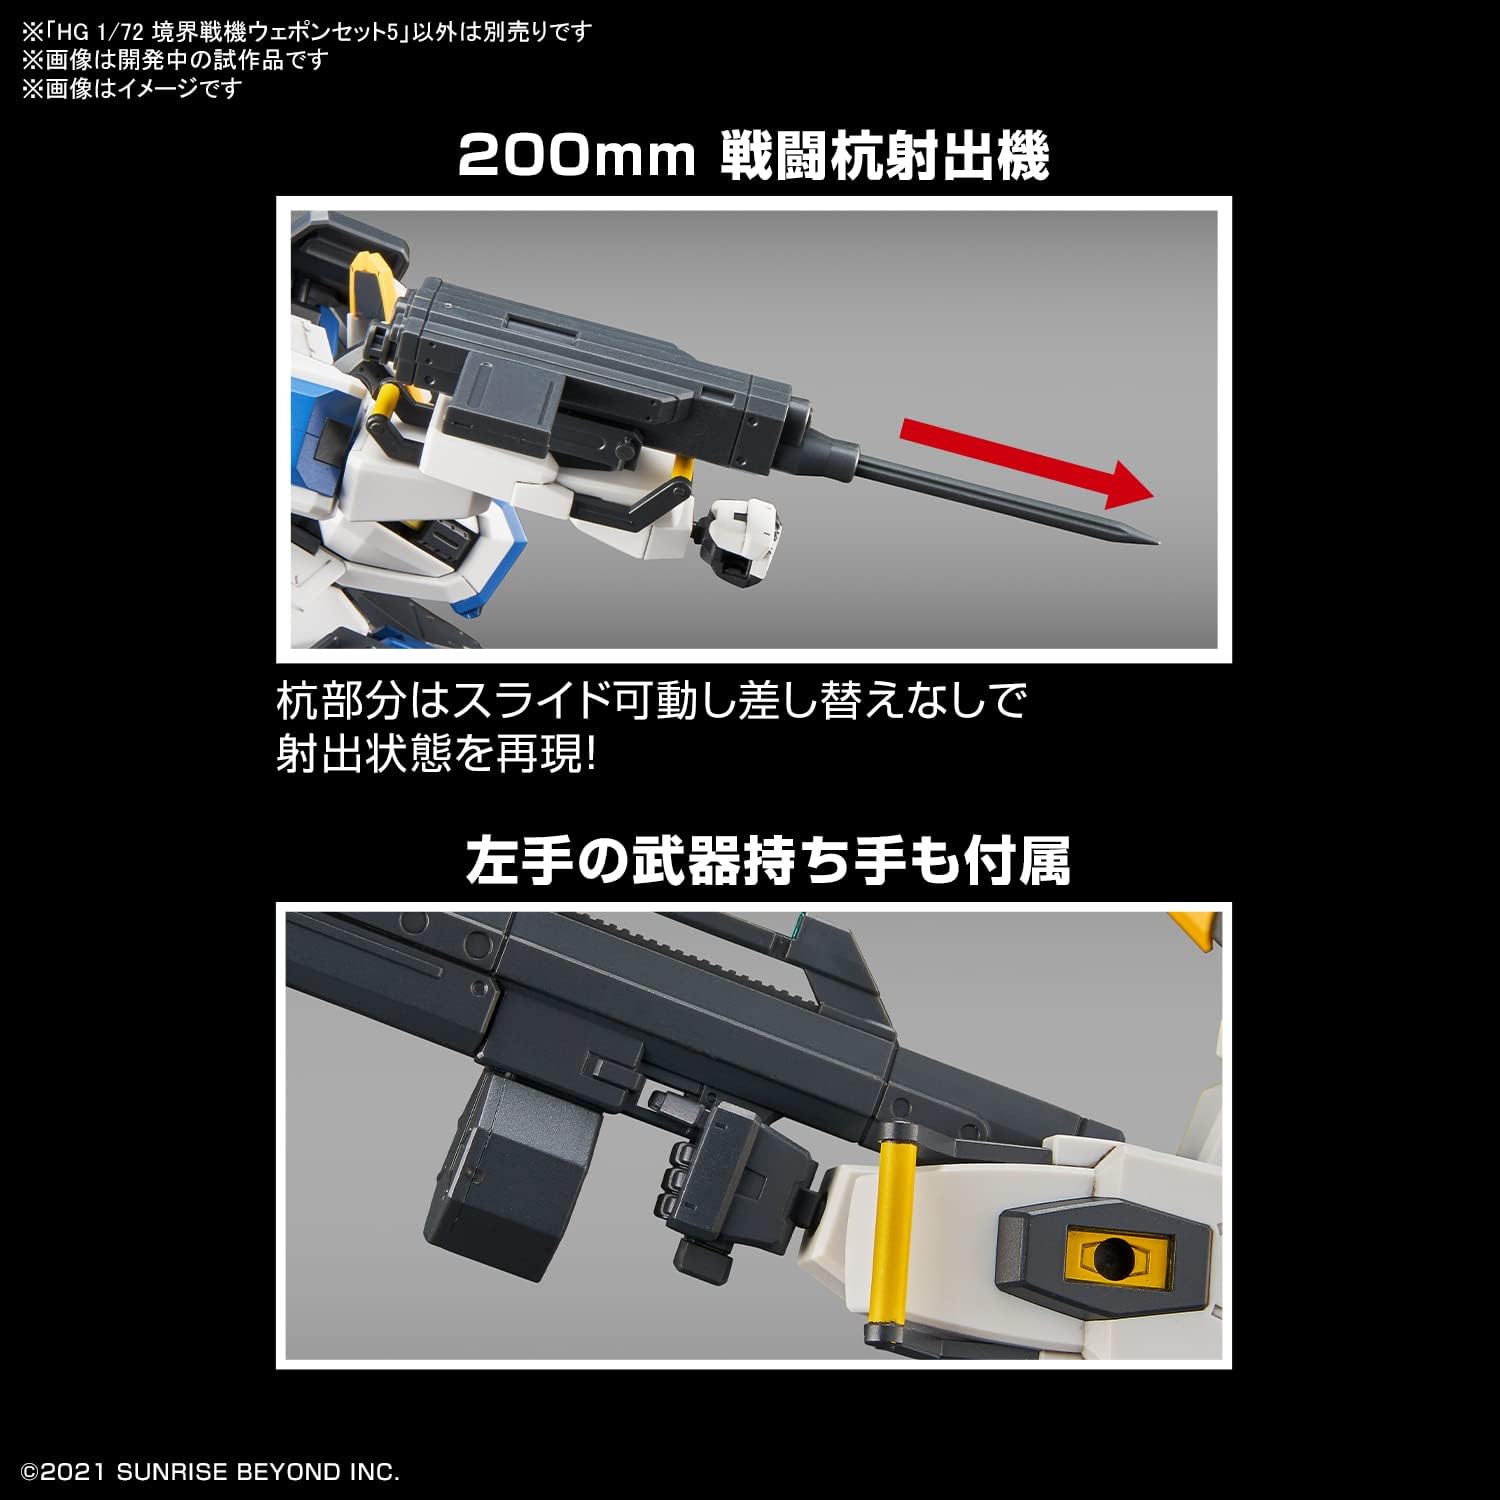 Kyoukai Senki Weapon Set 5 (HG)